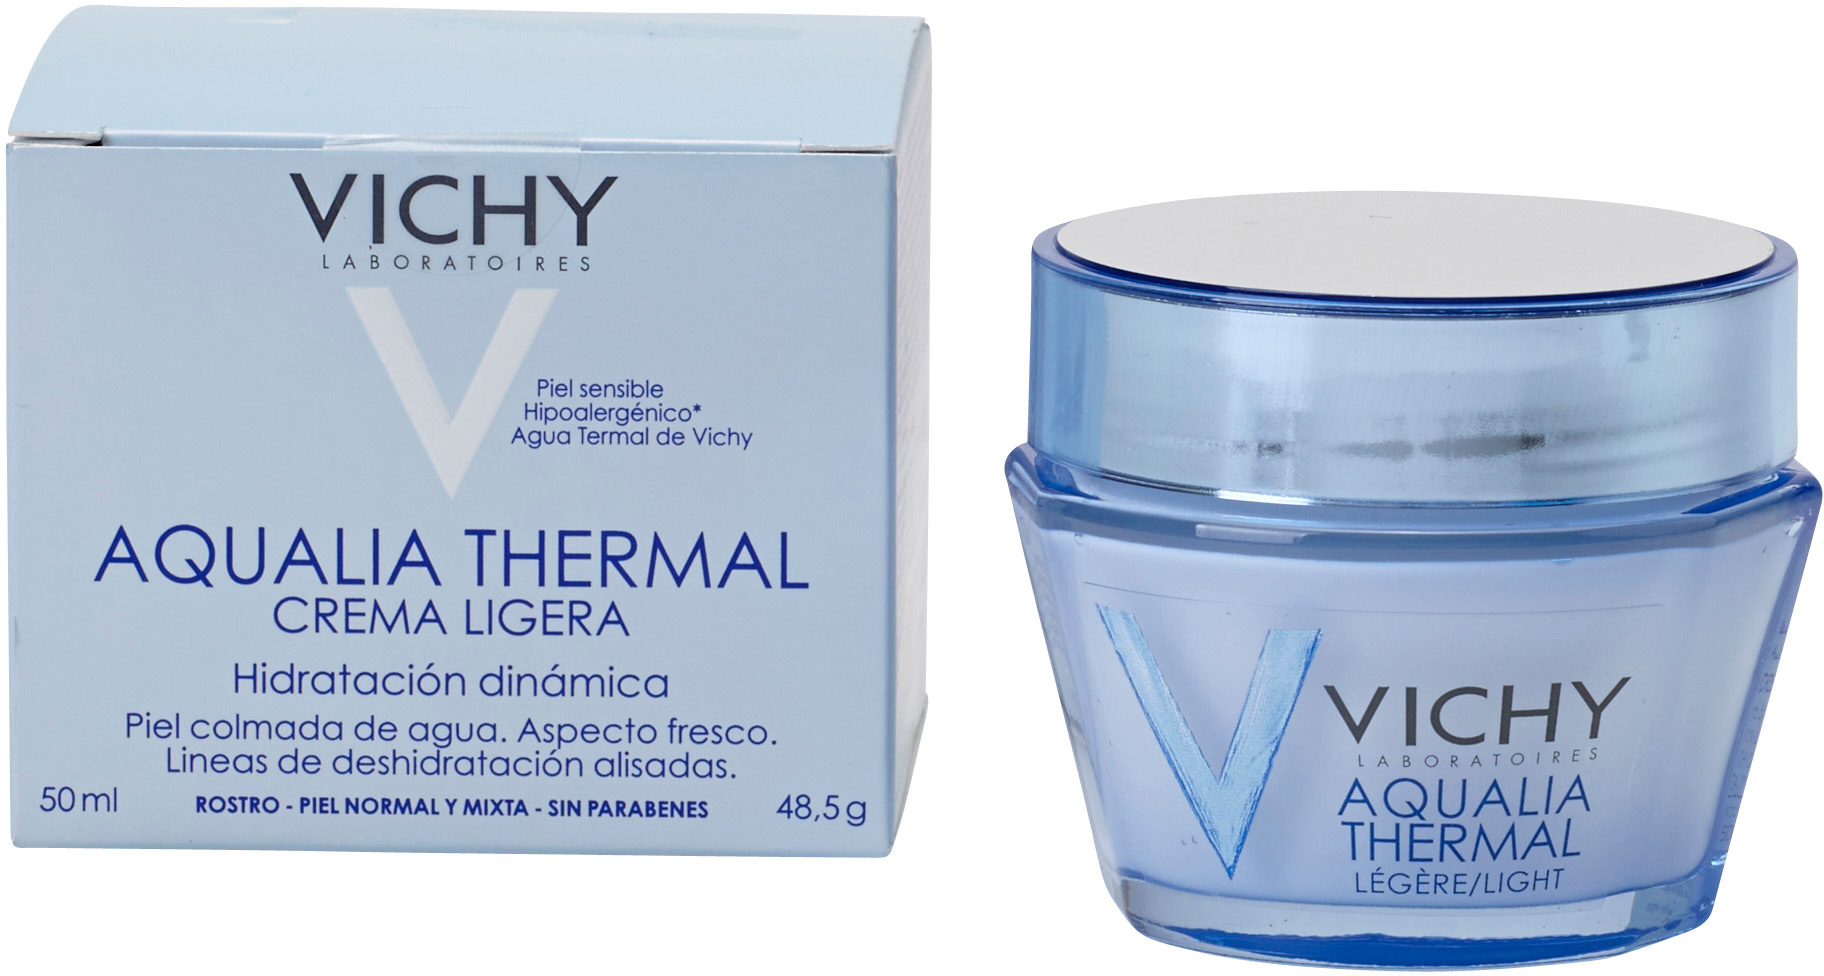 Por qué es importante hidratar la piel com Vichy Aqualia Thermale. La piel deshidratada provoca envejecimiento prematuro